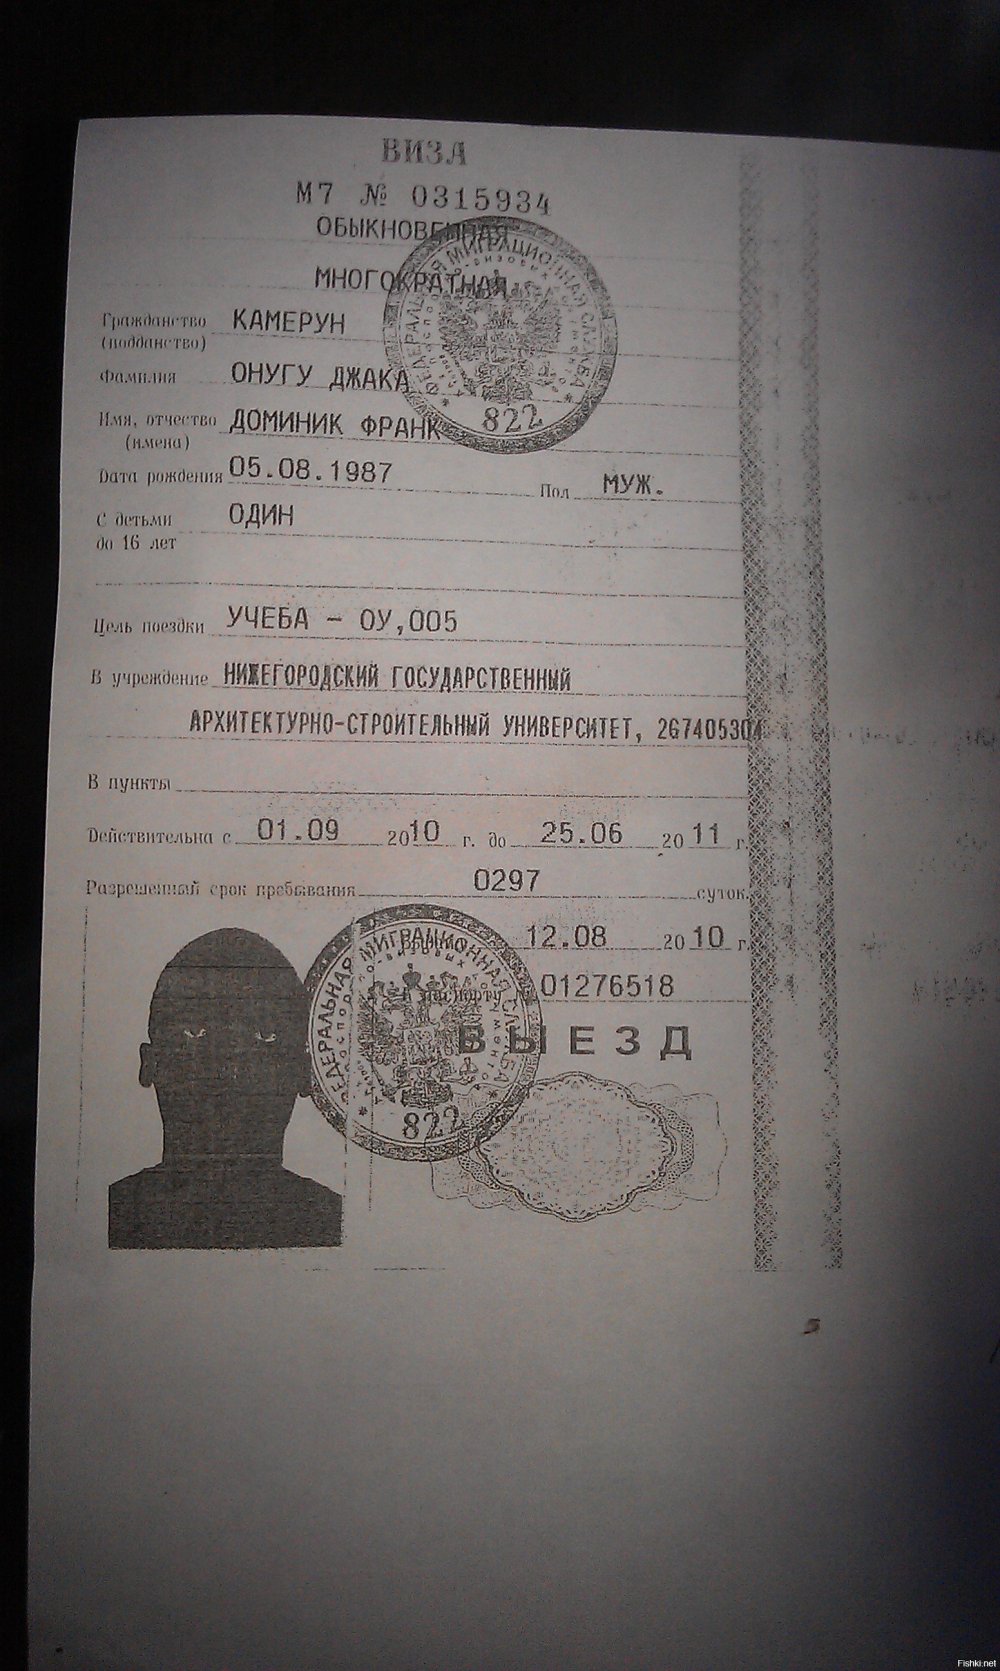 Ксерокопия паспорта негра